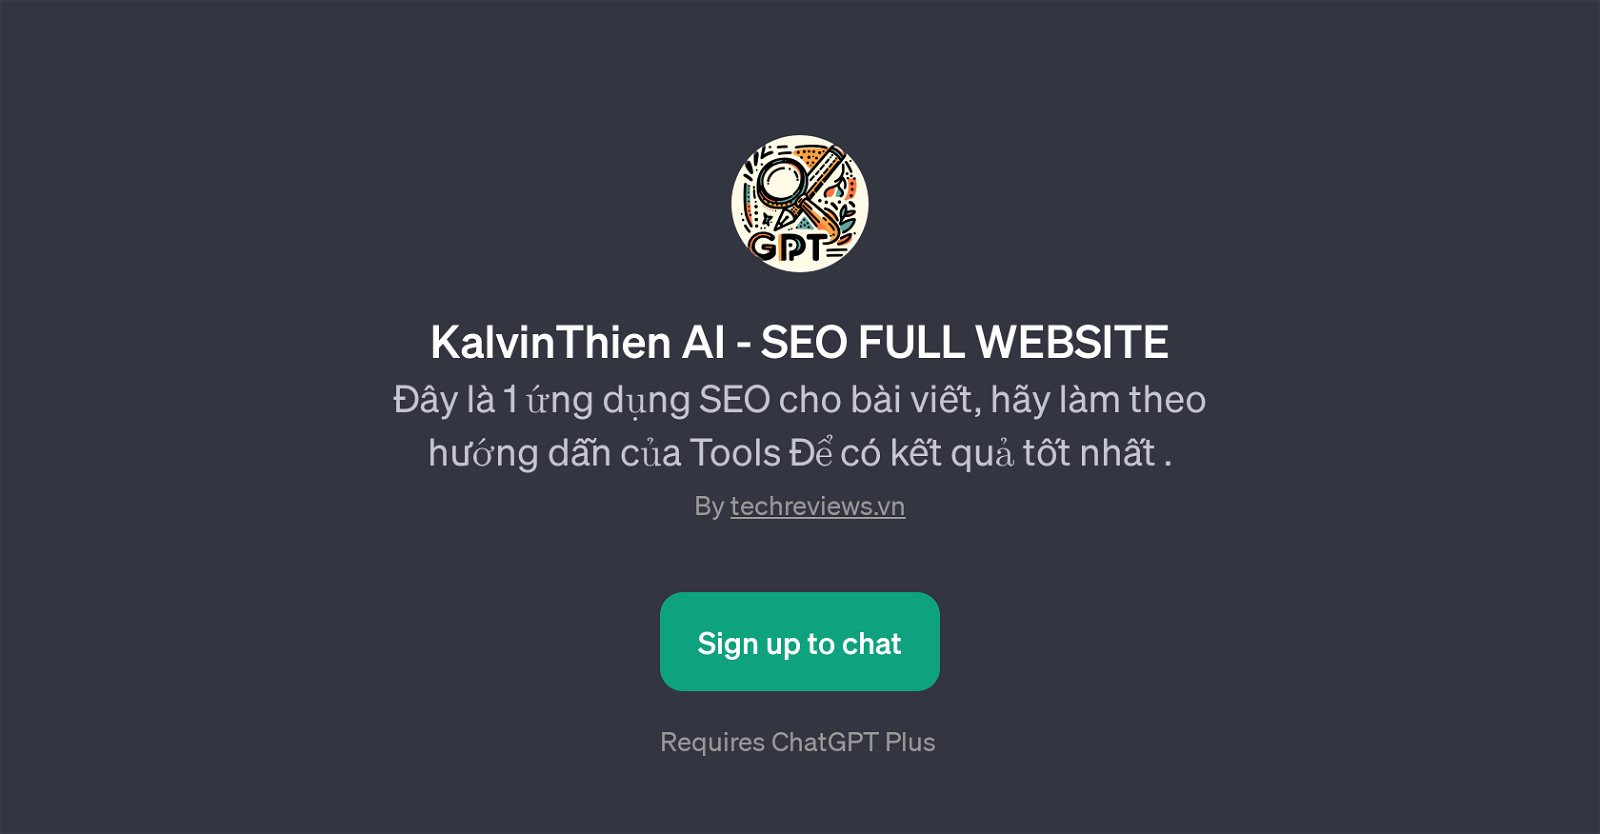 KalvinThien AI - SEO FULL WEBSITE website